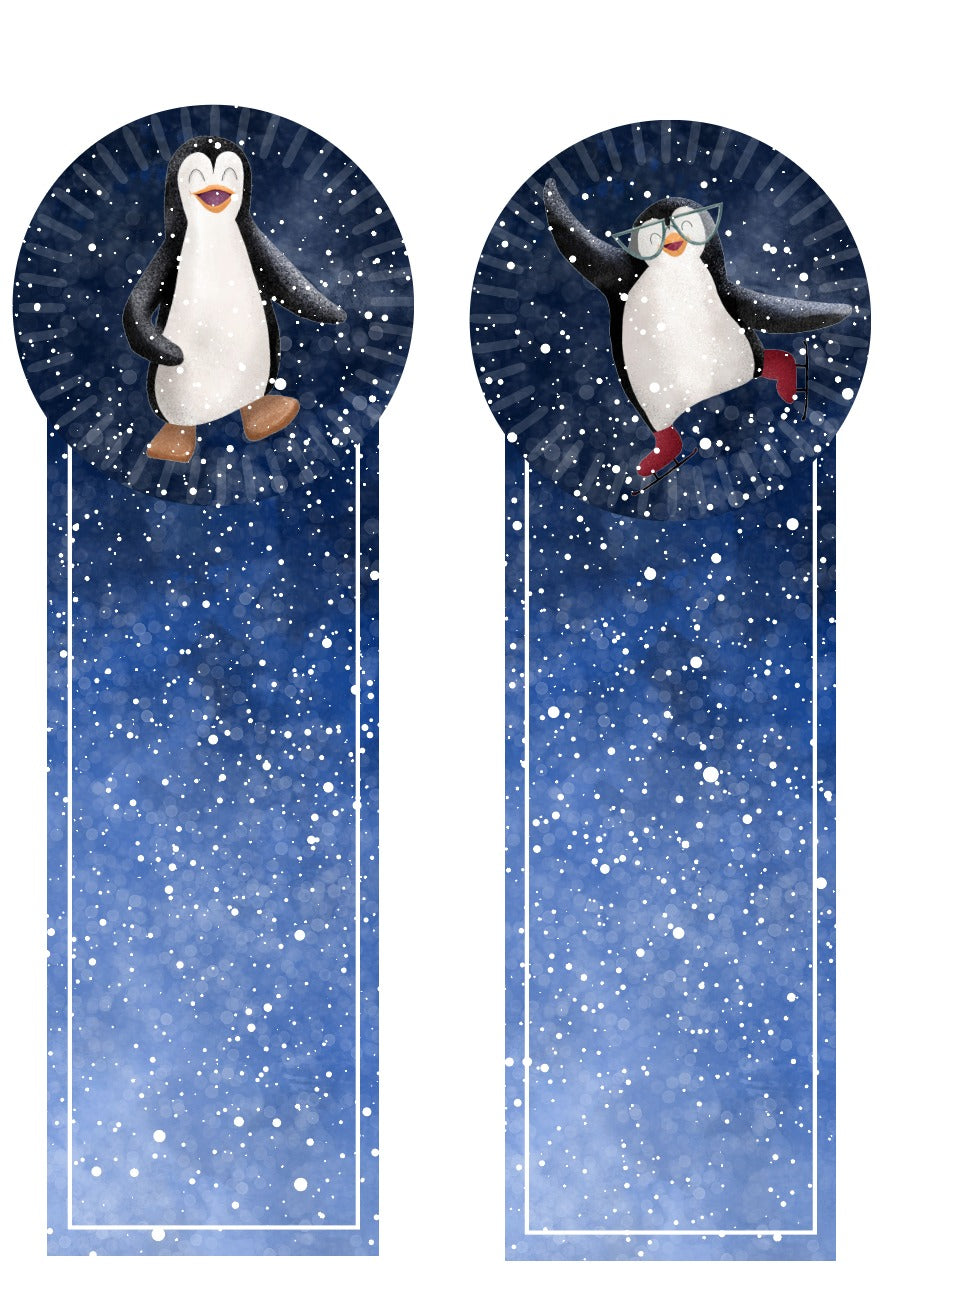 Pingutastisches Adventspaket - Eine weihnachtliche Reise vom Süd- zum Nordpol